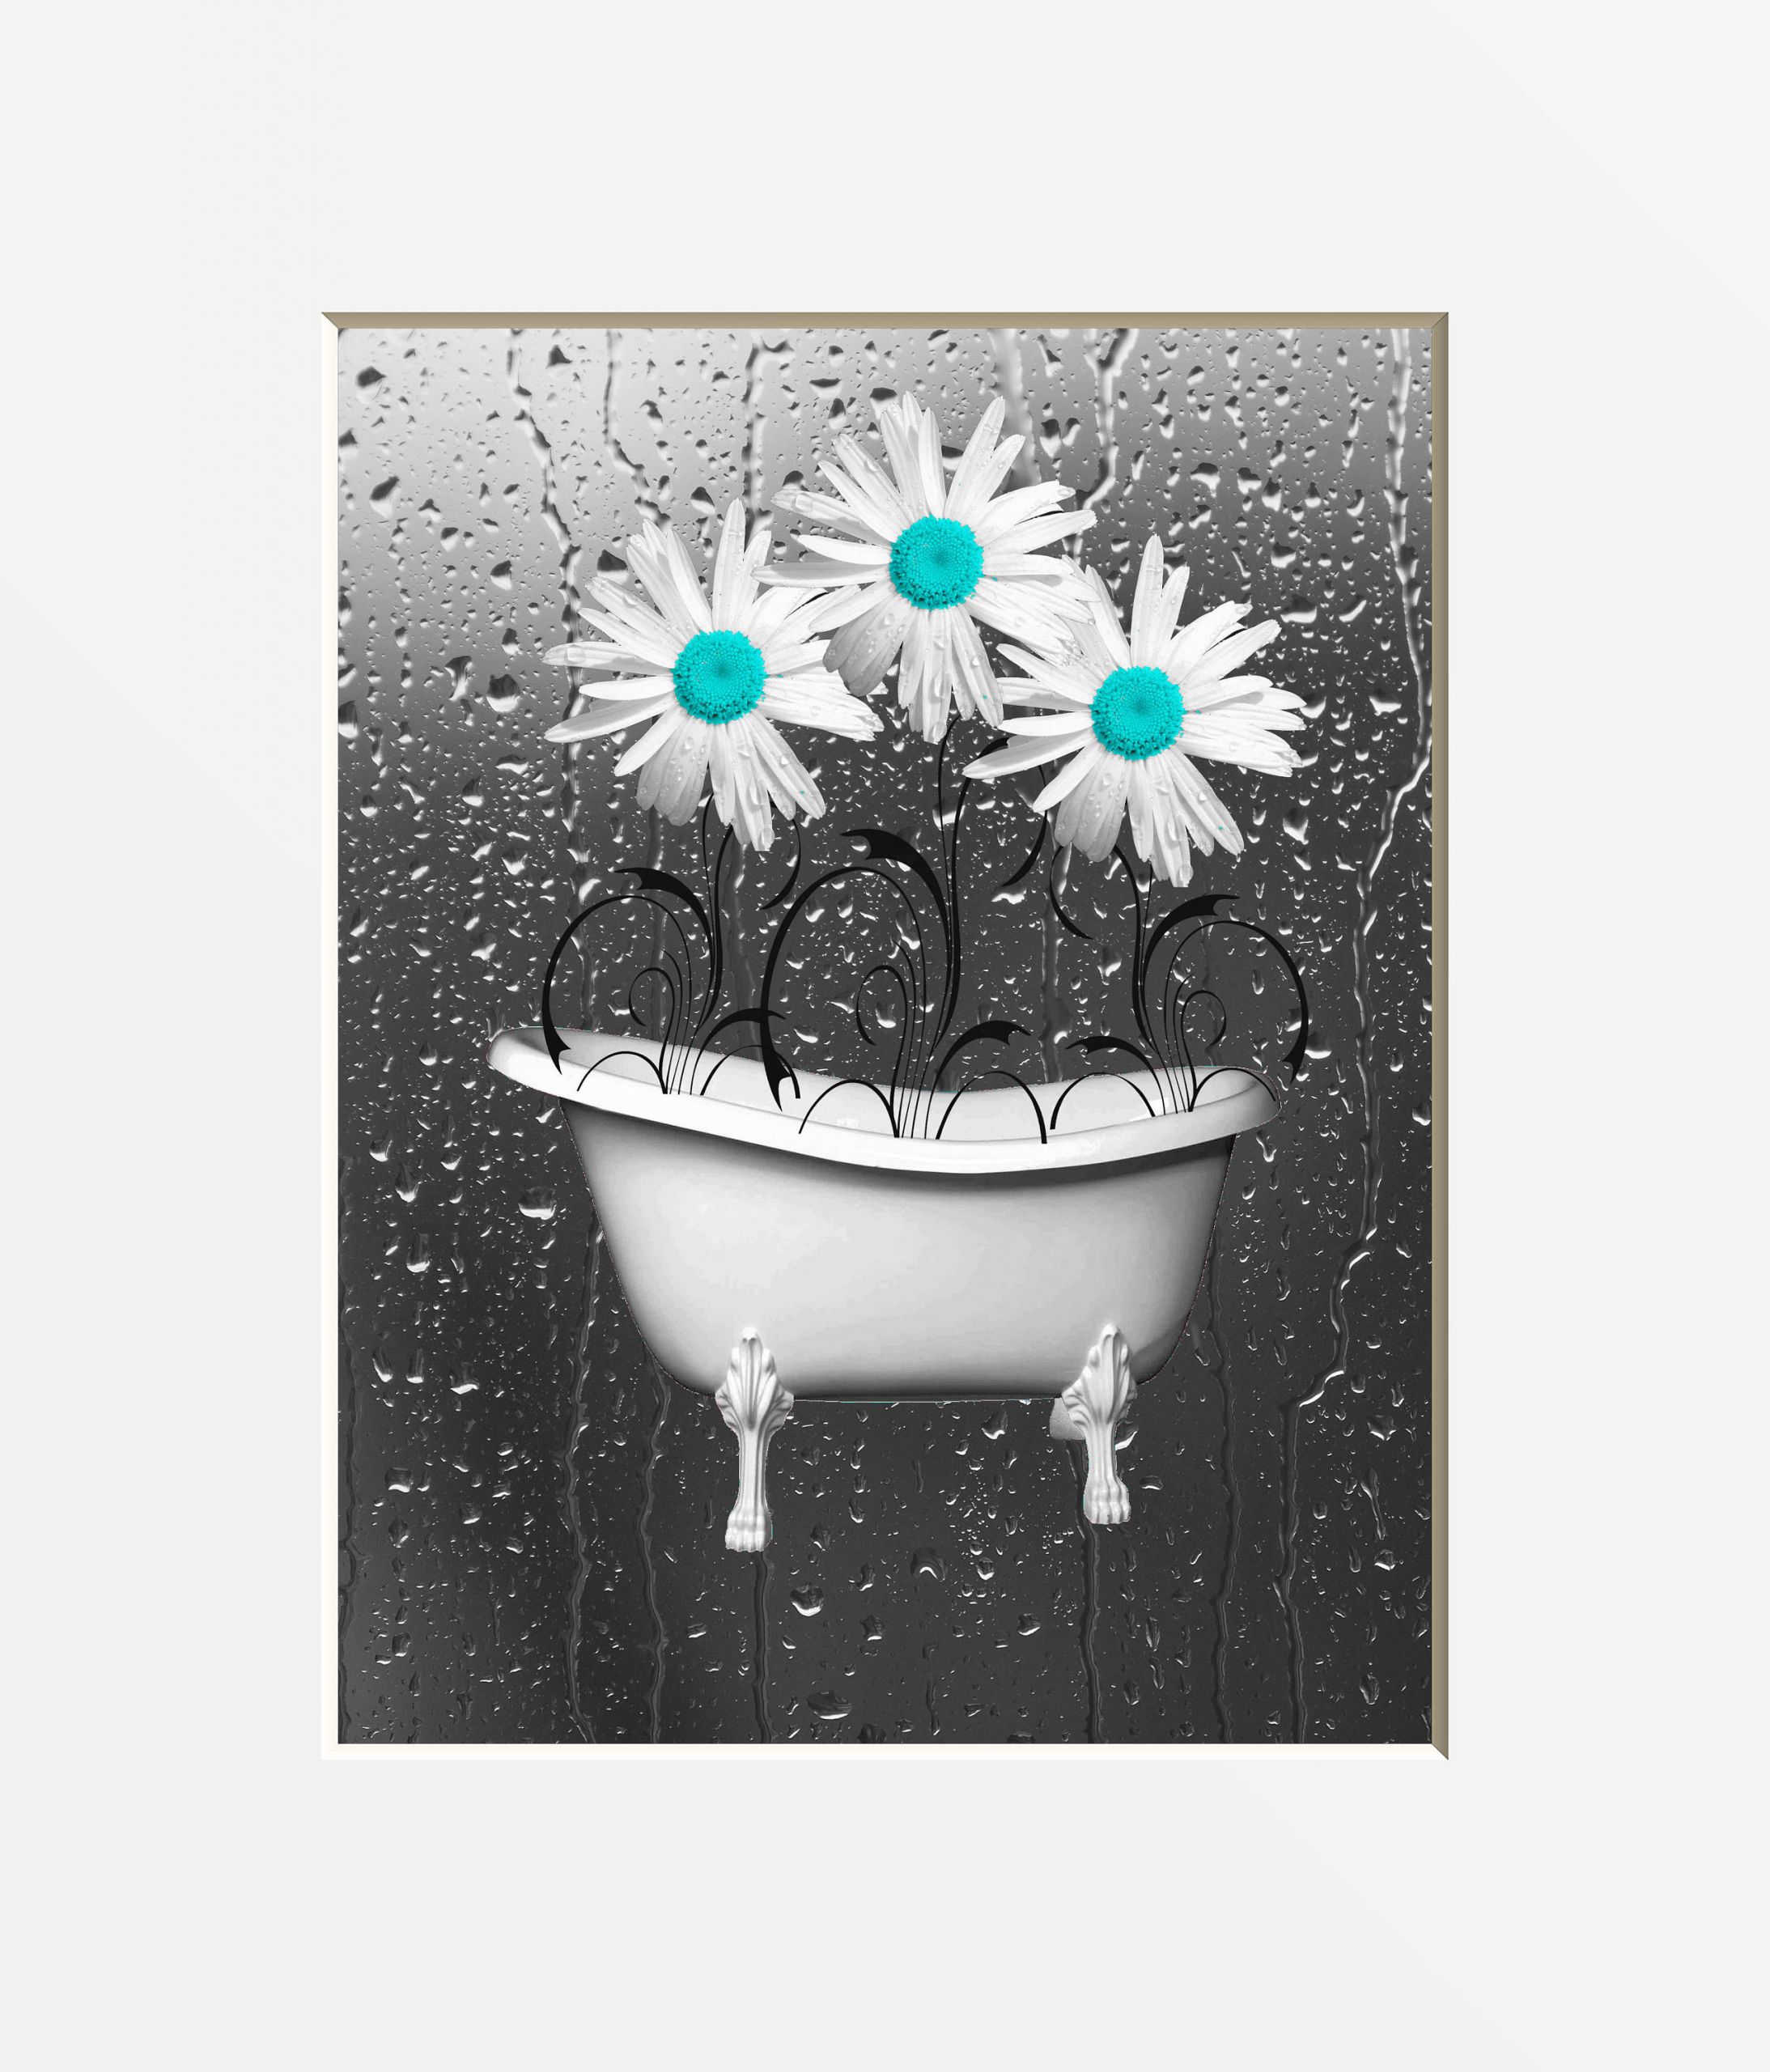 Teal Bathroom Decor
 Teal Gray Bathroom Wall Art Teal Daisy Flowers Bathtub